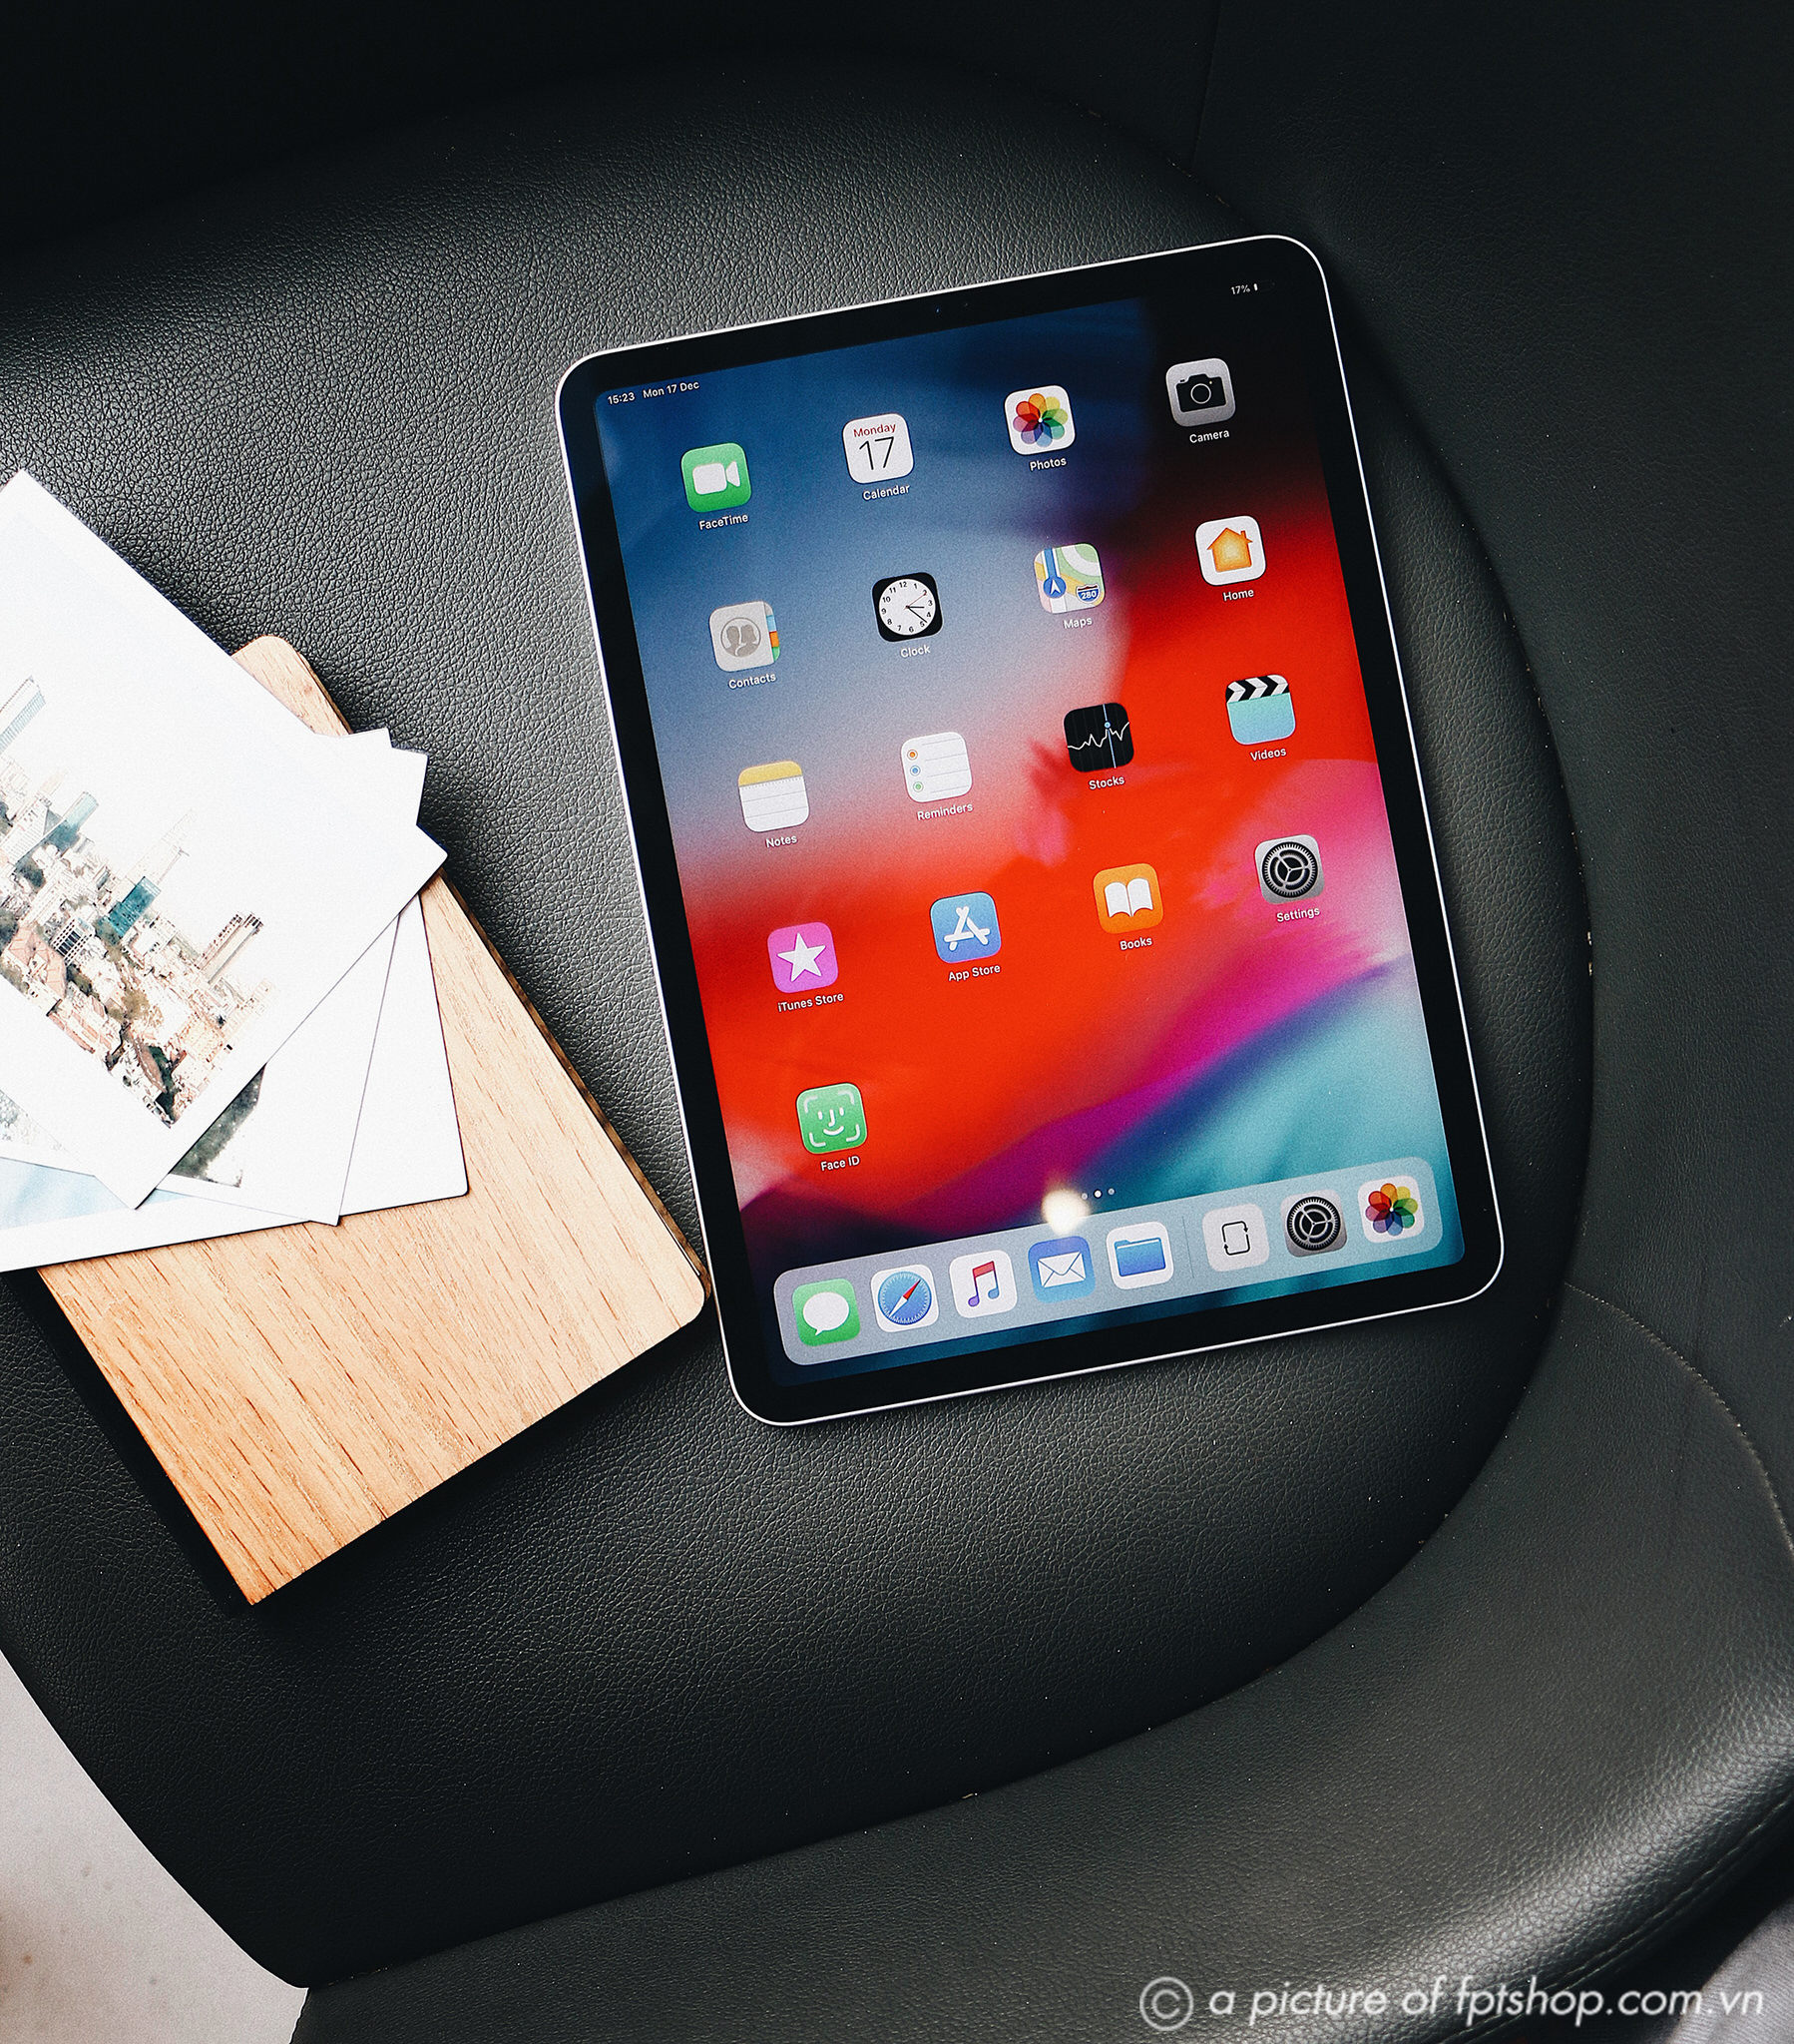 iPad Pro và Macbook Air Retina phiên bản 2018 chính thức lên kệ FPT Shop